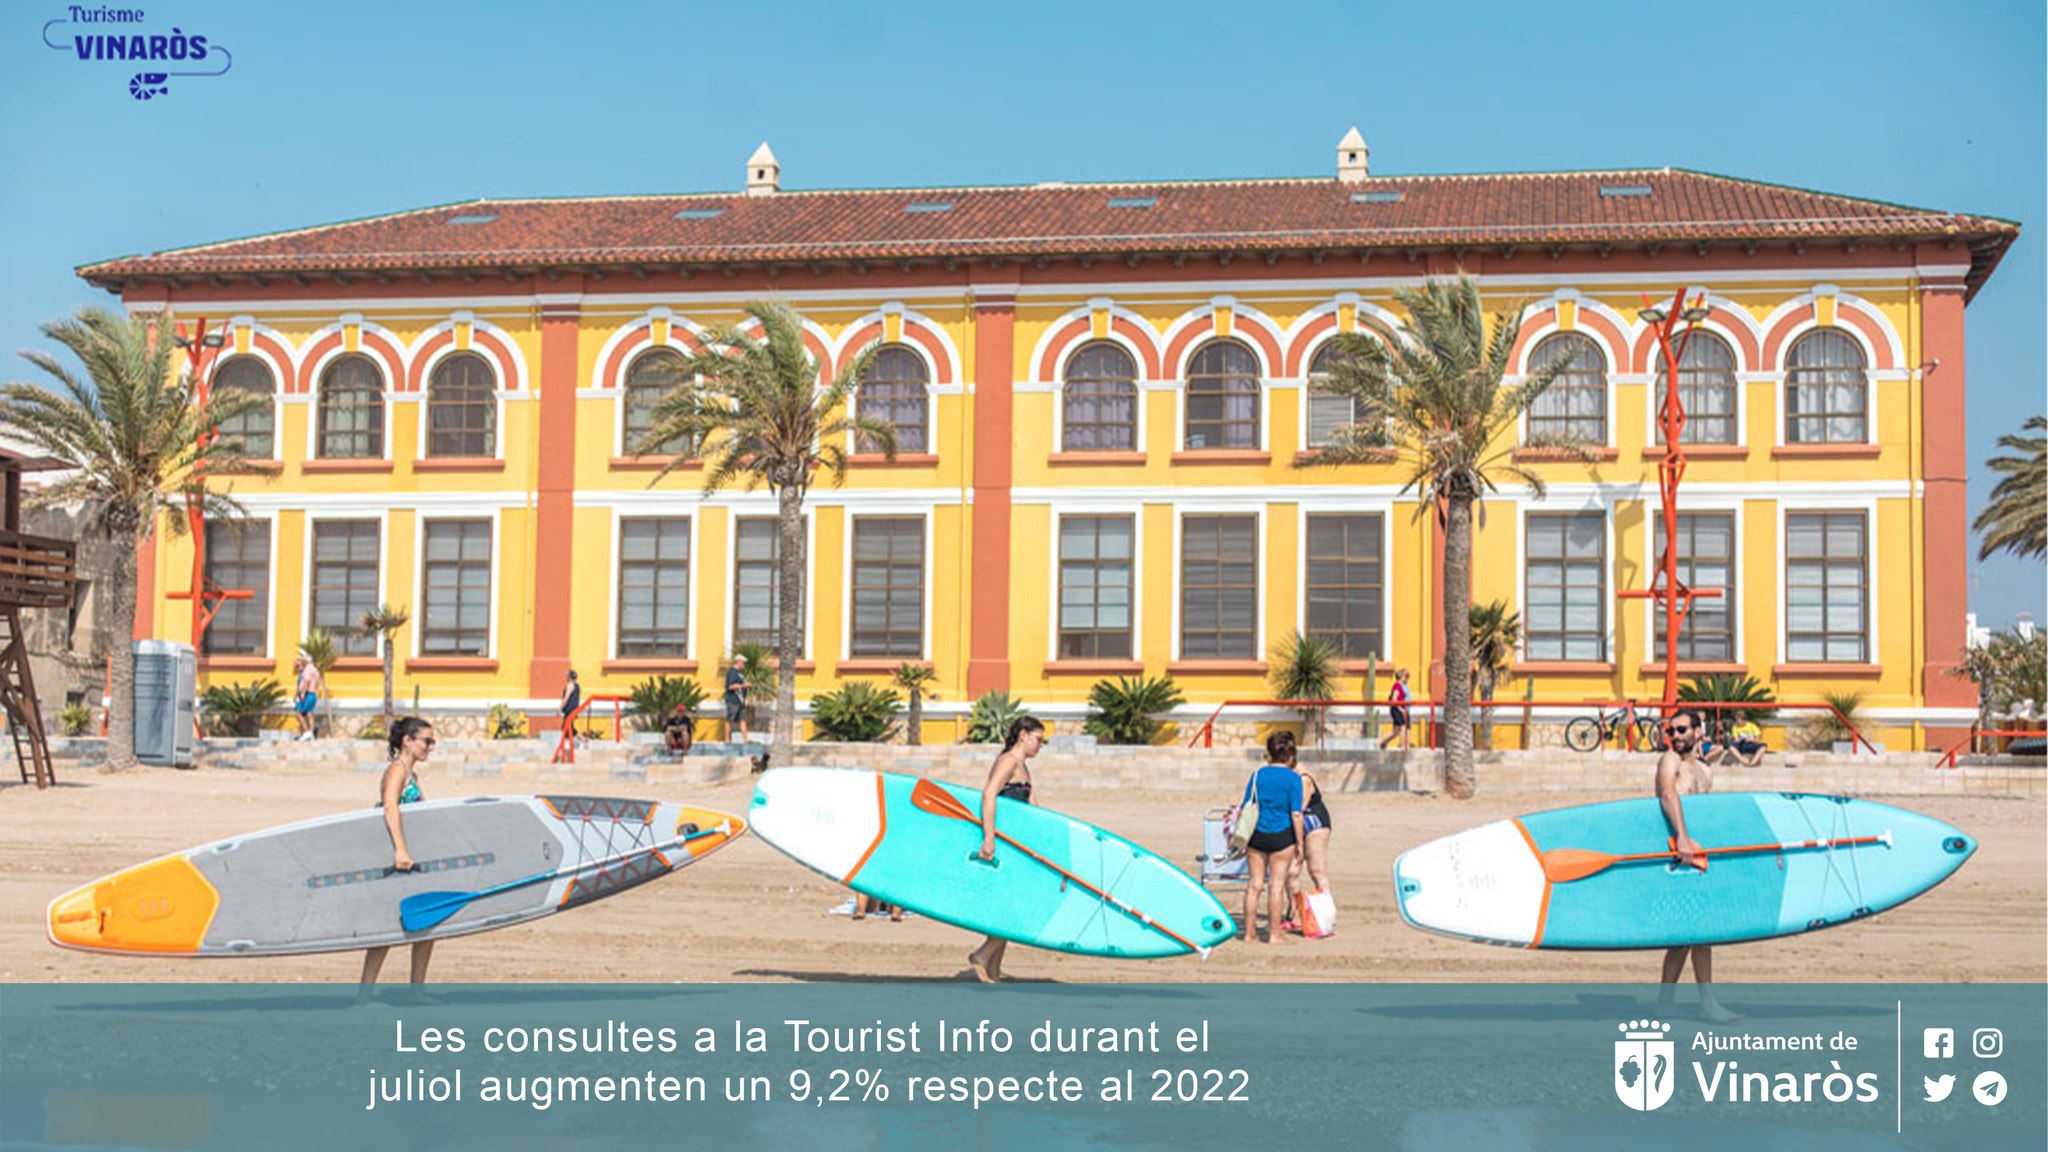 Las consultas a la Tourist Info Vinaròs durante julio aumentan un 9,2% respecto al 2022